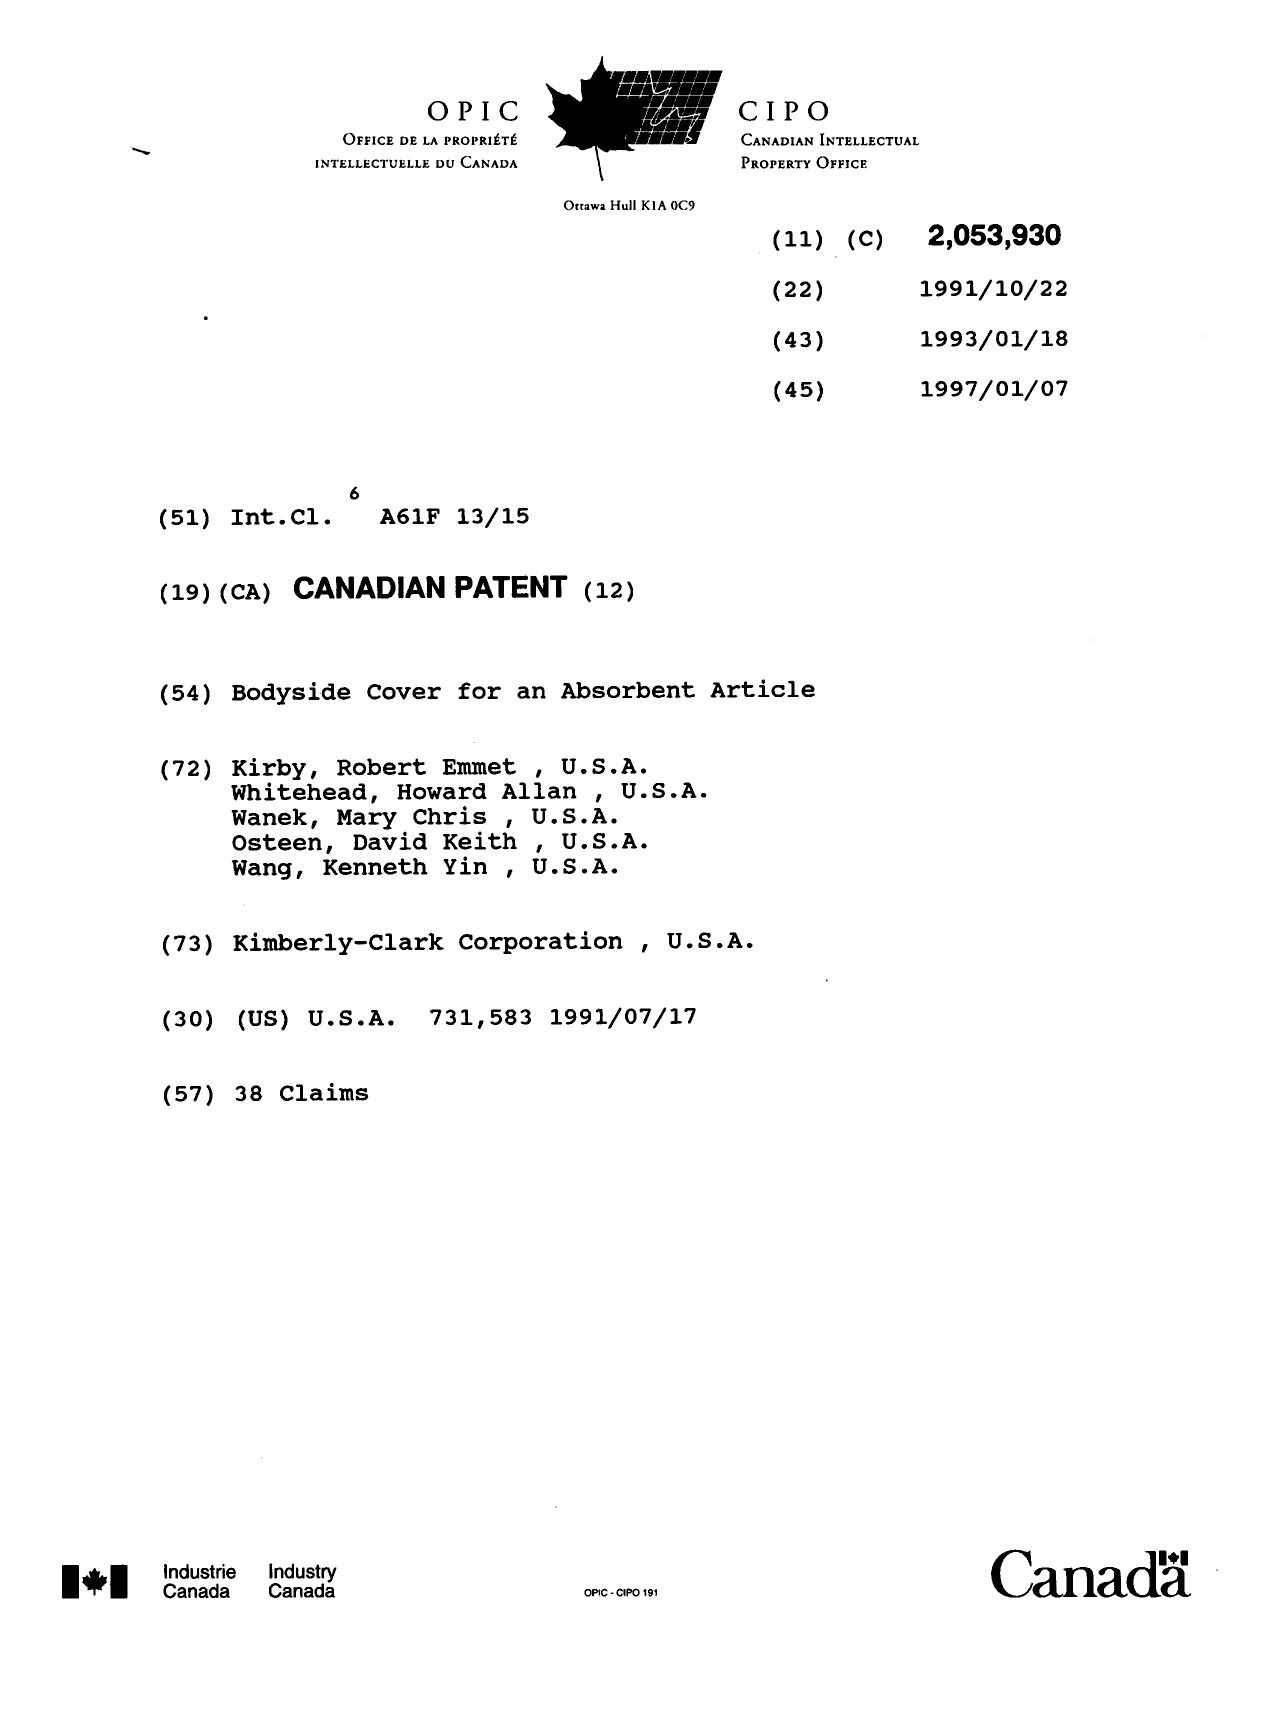 Document de brevet canadien 2053930. Page couverture 19970107. Image 1 de 1